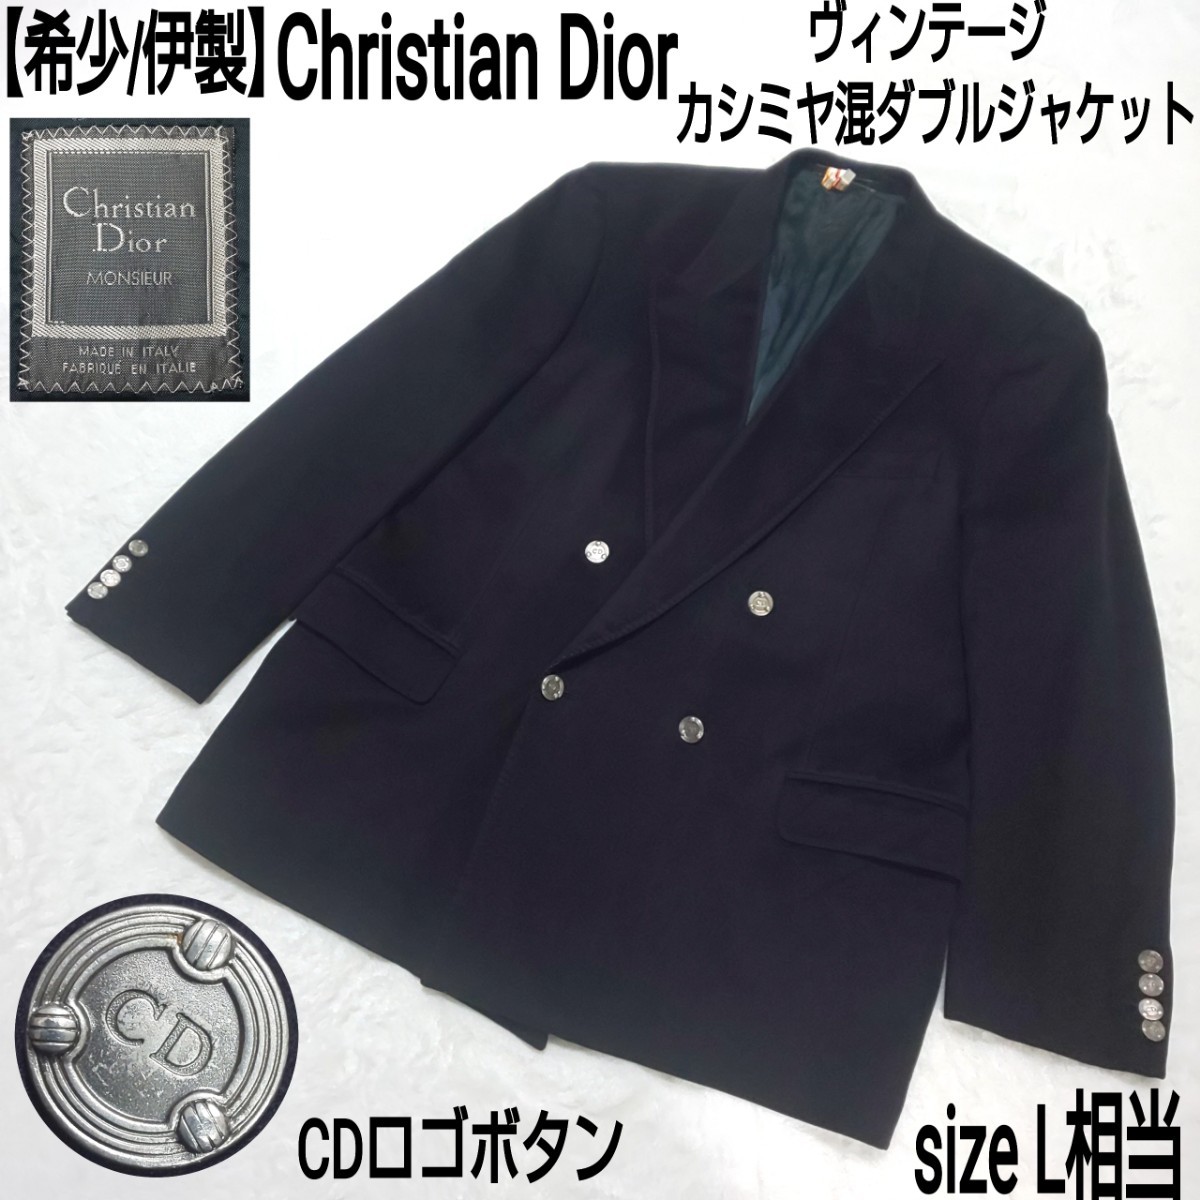 感謝報恩 【極美品/伊製】Christian Dio 2Bテーラードジャケット